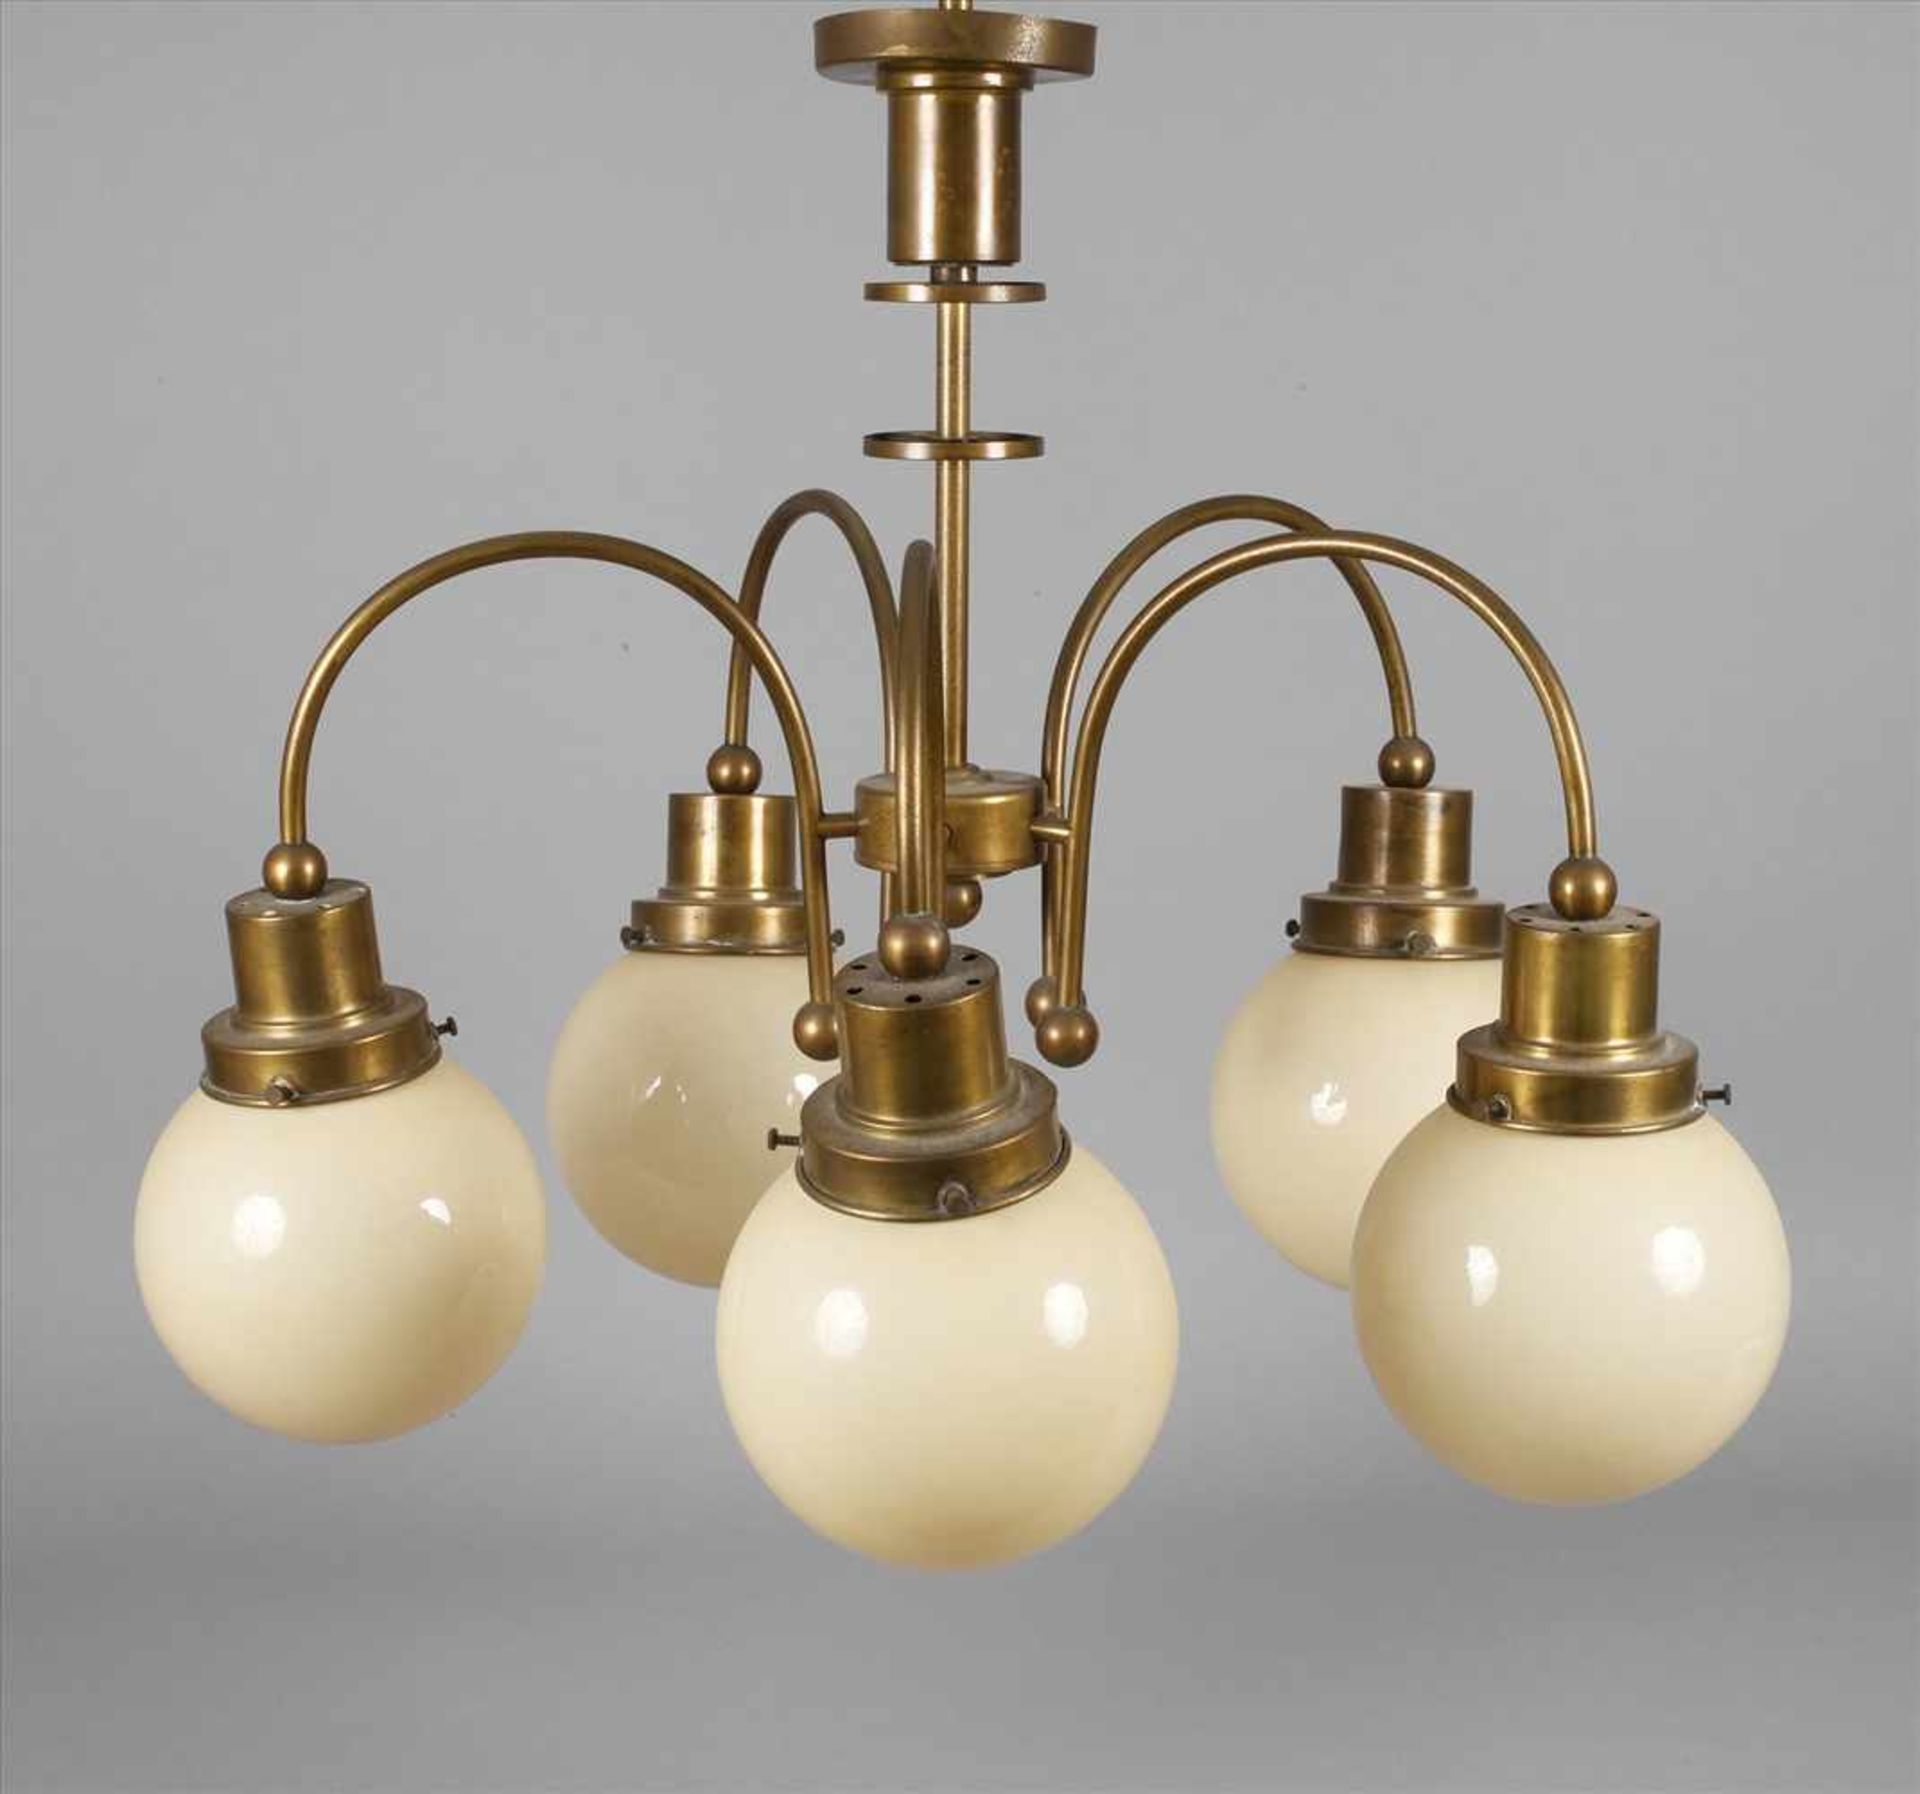 Deckenlampe Art découm 1930, Messinggestänge in stilisierter Balusterform, mit sechs c-förmig